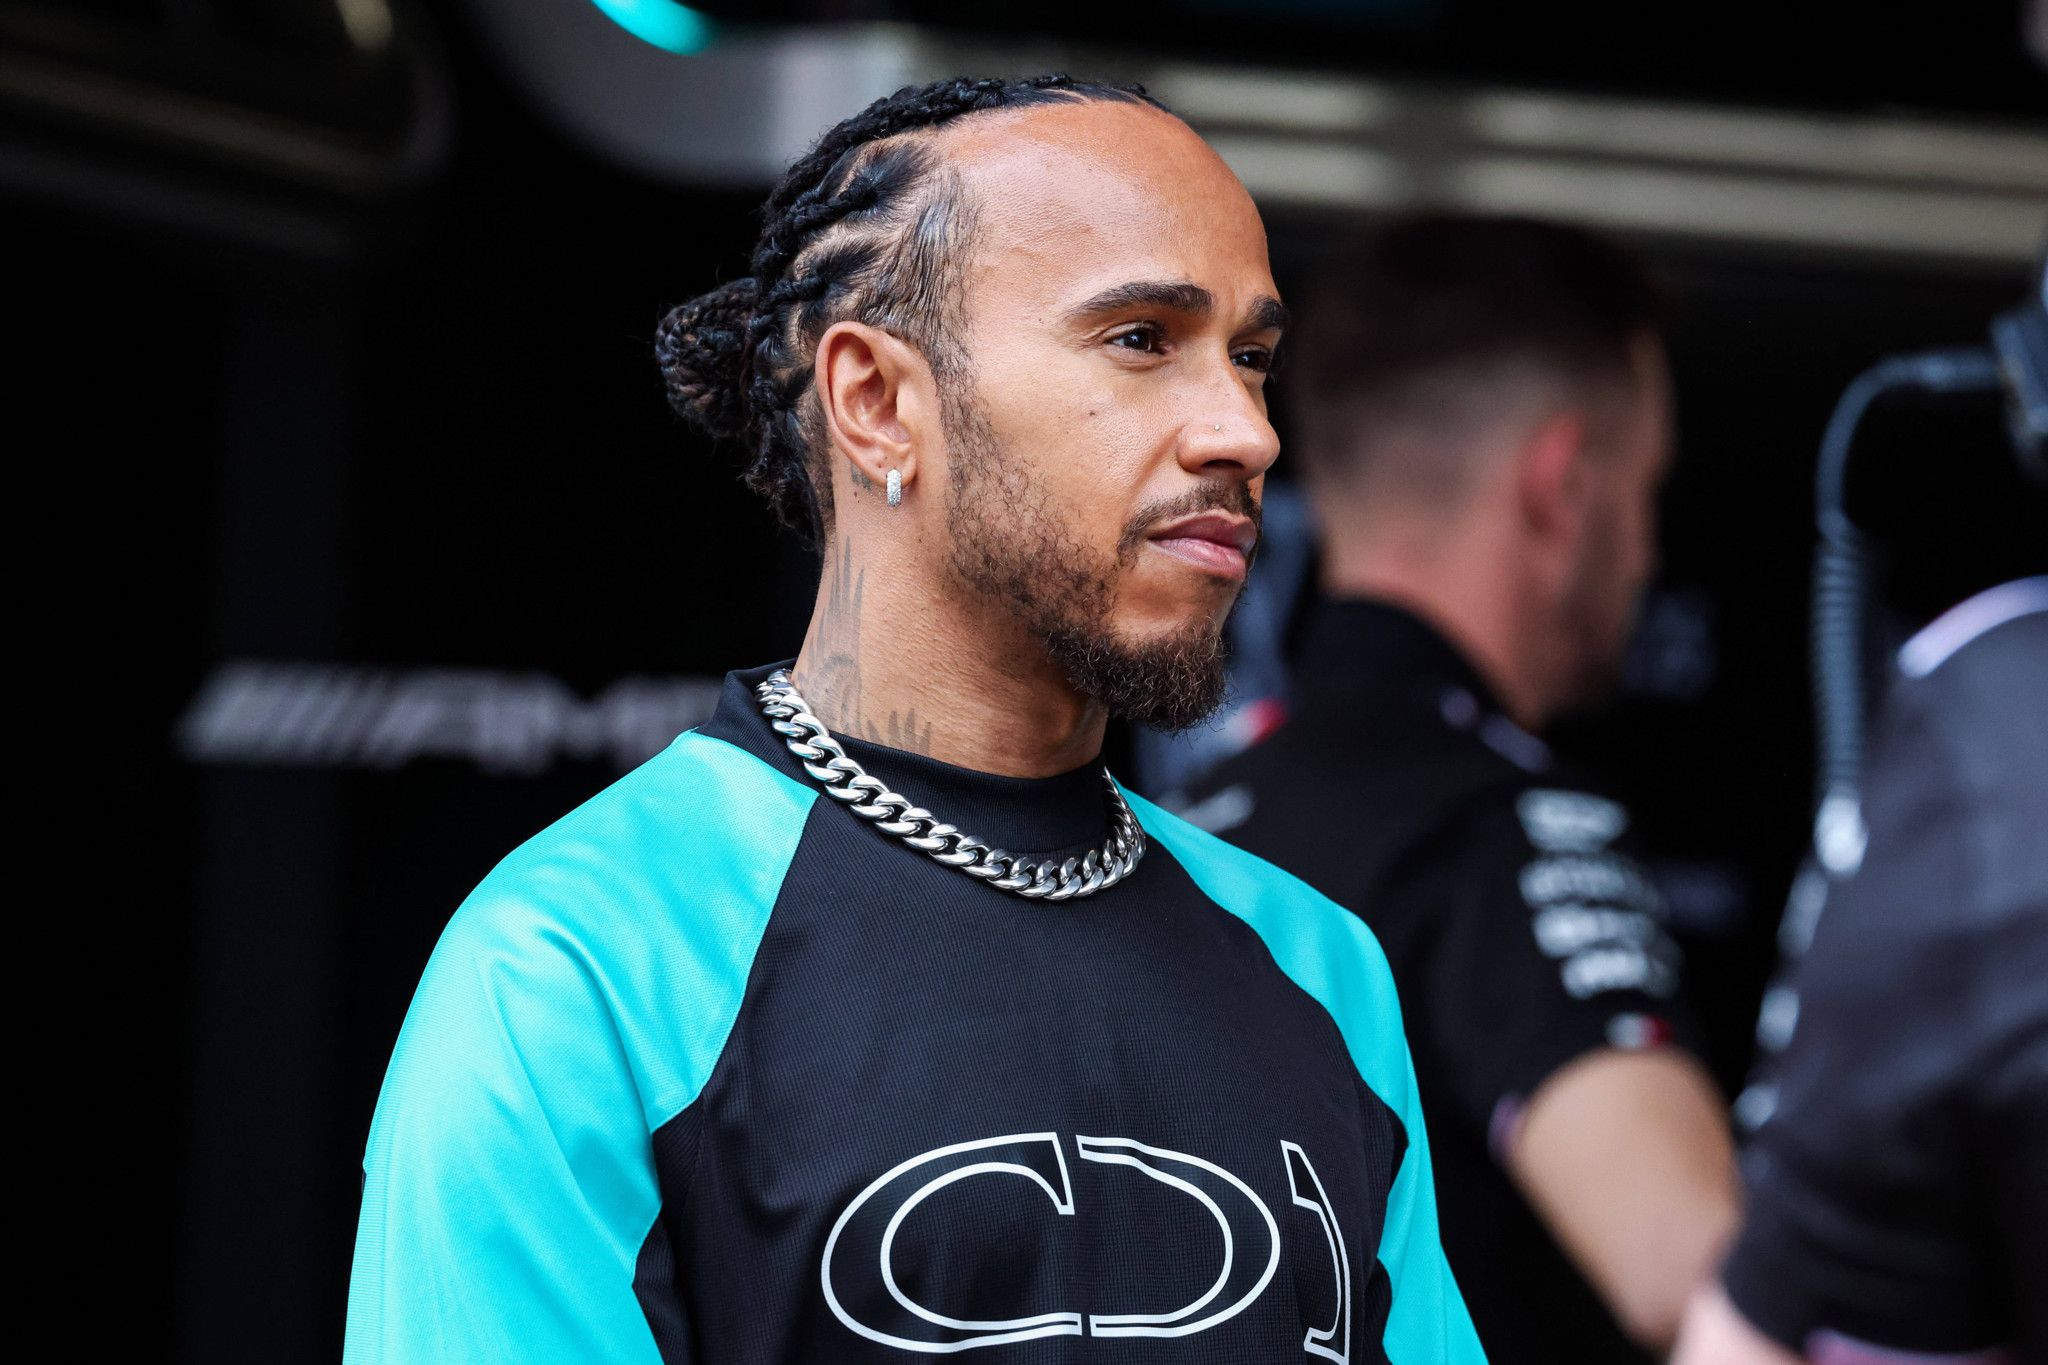 Un email douteux accuse Mercedes de saboter Lewis Hamilton